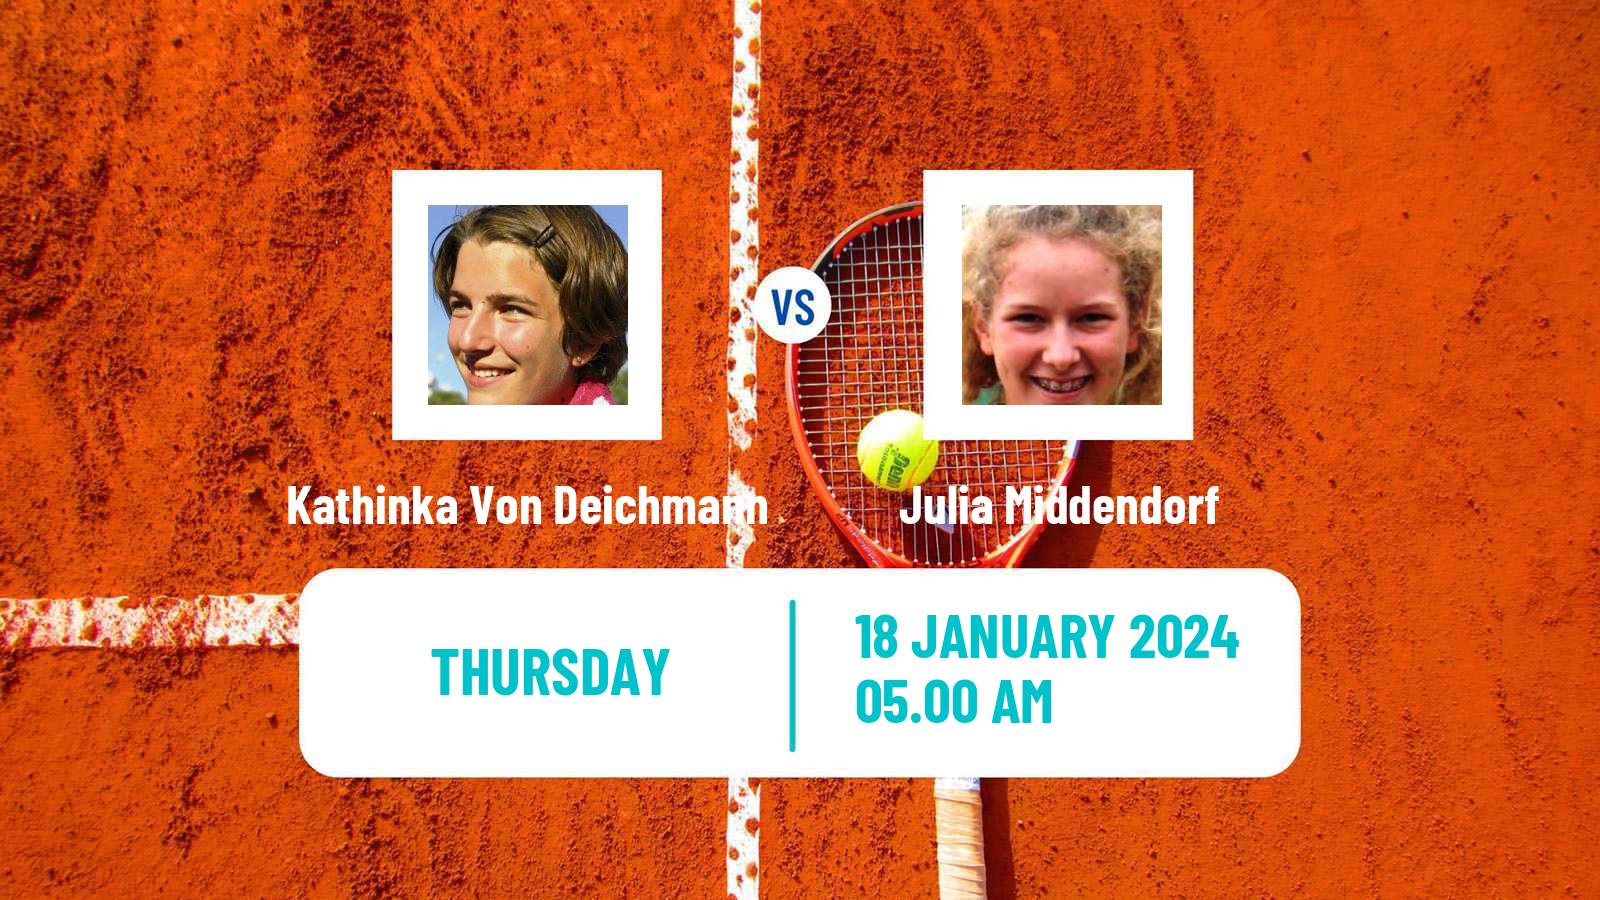 Tennis ITF W35 Sunderland Women Kathinka Von Deichmann - Julia Middendorf